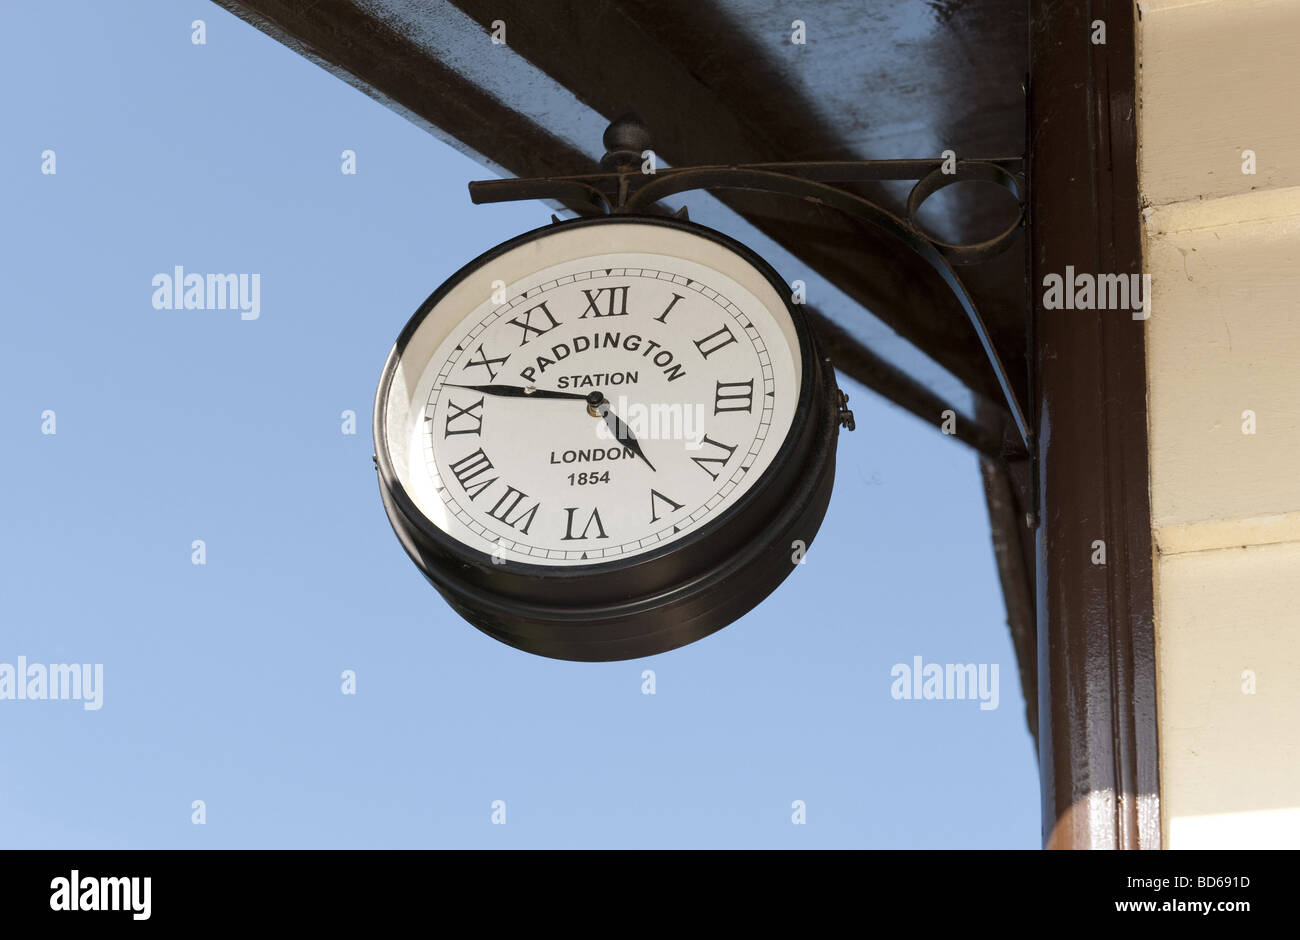 Wand hing Paddington Station Branding analoge Uhr mit römischen Ziffern Uhr Gesicht Angabe 4.47 Zeit vor einem blauen Himmel Stockfoto